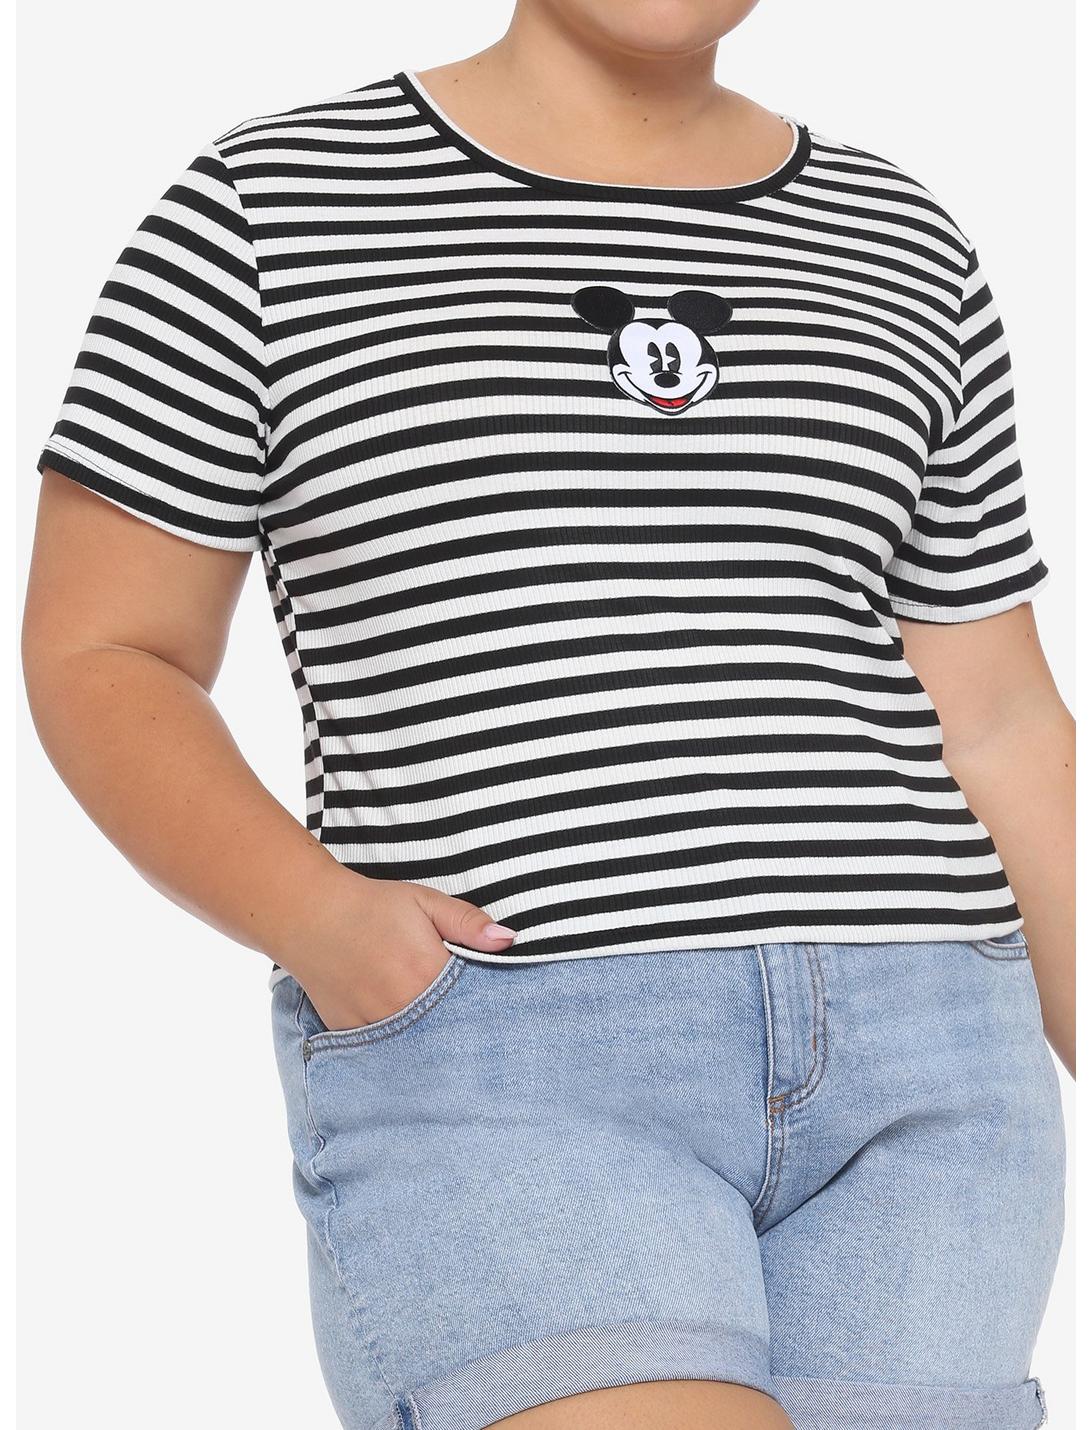 Disney Mickey Mouse Black & White Stripe Girls Top Plus Size, WHITE, hi-res